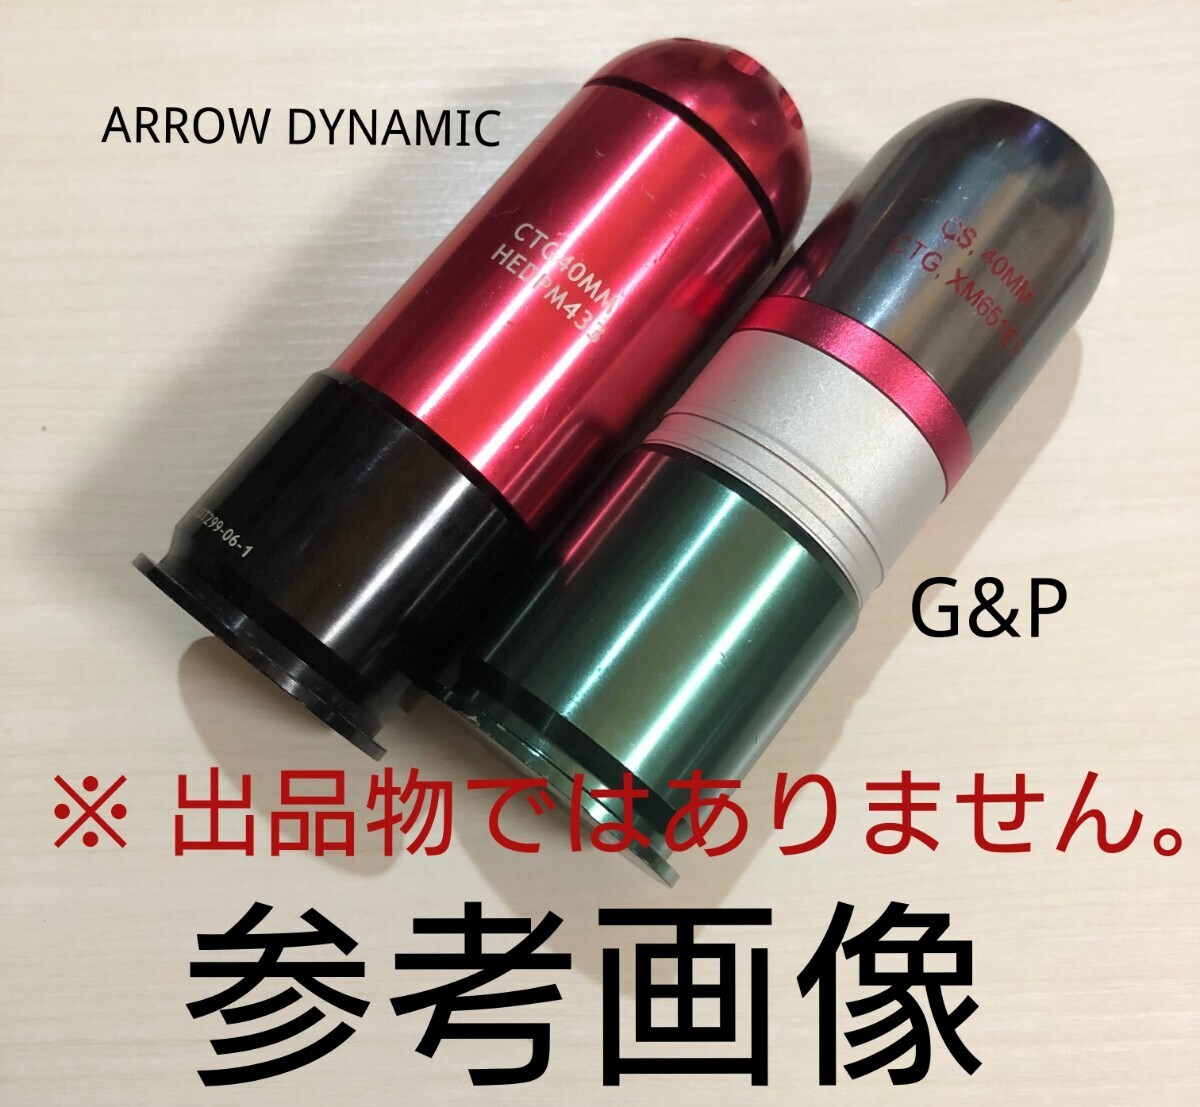 G&P ARROW DYNAMIC 40mm グレネード カートリッジ バルブ補修用Oリング ロッキングボール 1セット m203/グレネードランチャー/モスカート_画像3